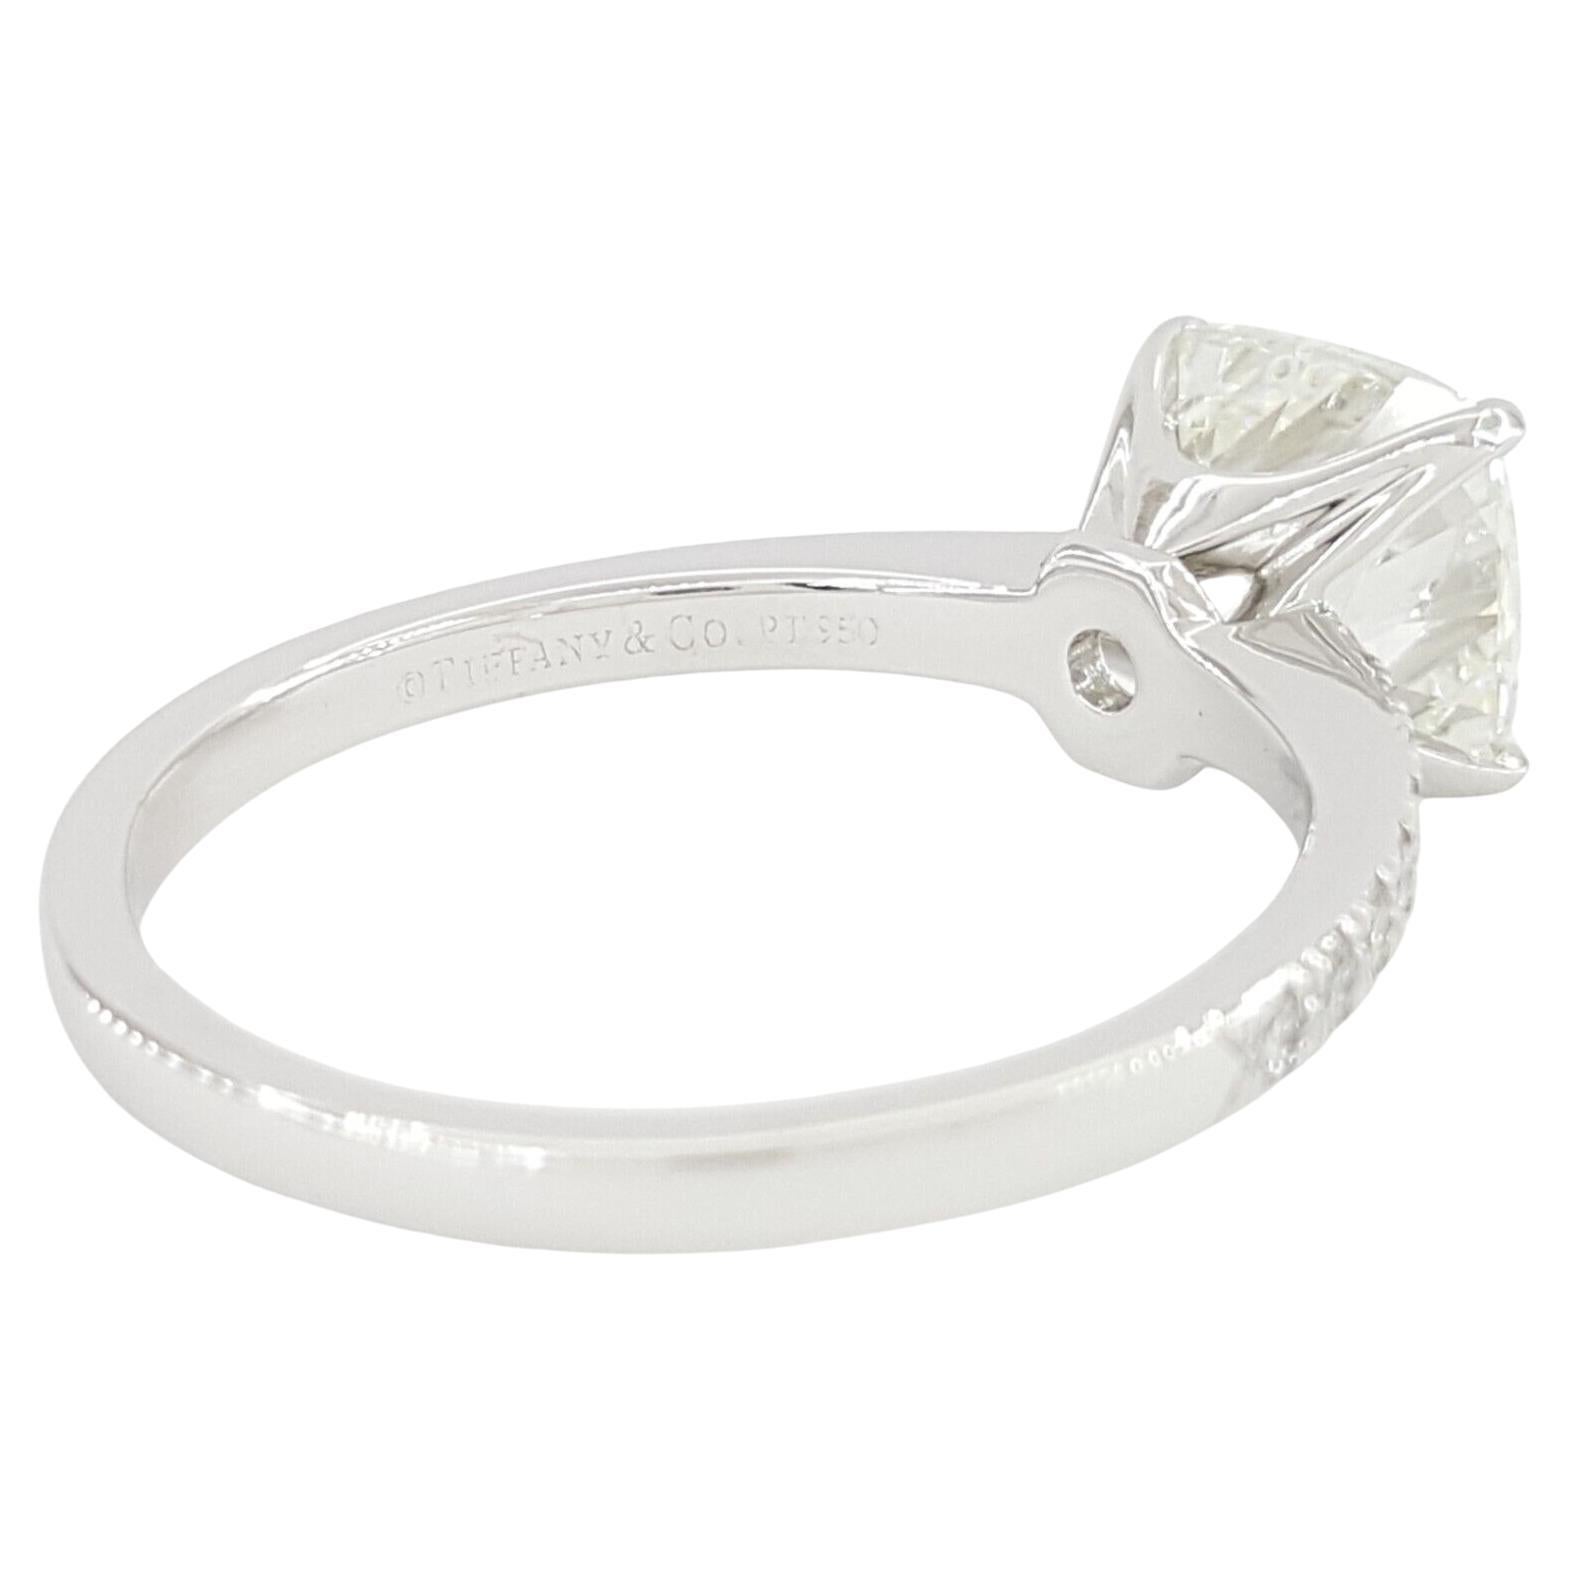 Tiffany & Co. NOVO Platinum Cushion Brilliante Cut Diamond Engagement Ring 2.37 ct Total Weight . 

La bague pèse 4,5 grammes, taille 7,5, la pierre centrale est un diamant naturel de taille brillant coussin Novo pesant 2,21 ct, de couleur G, de